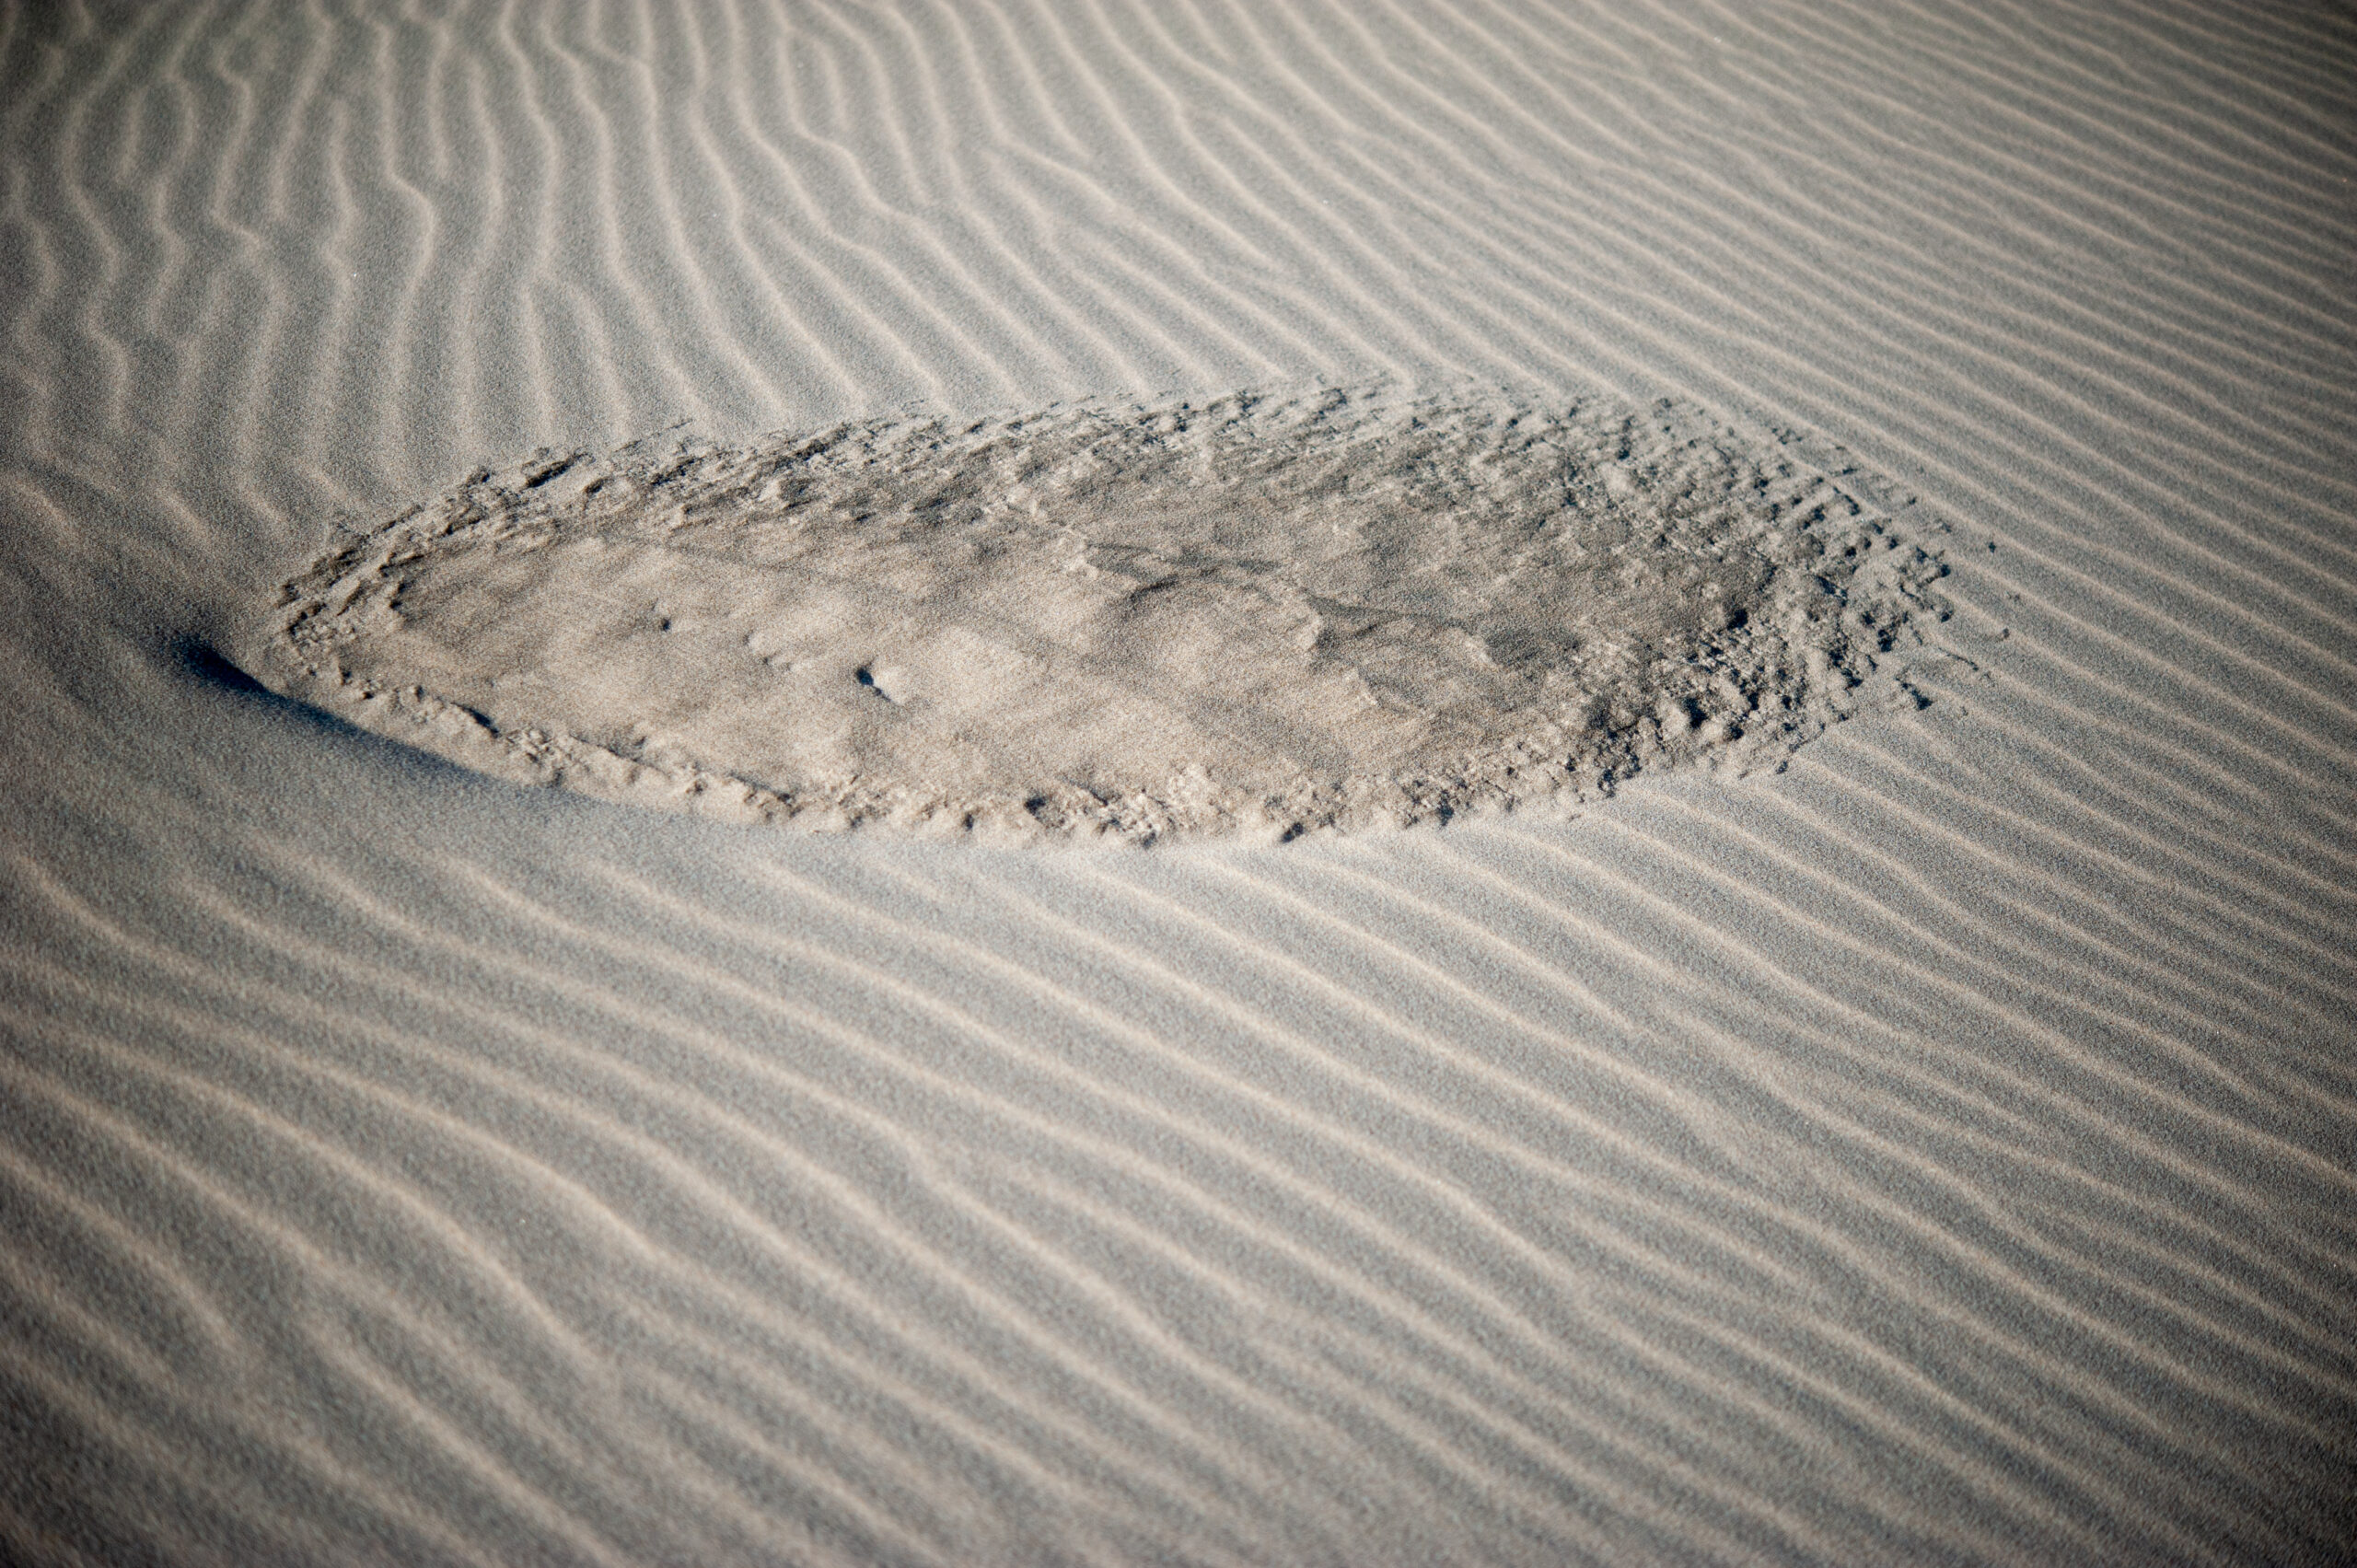 Rond stuk zand temidden van zand met golven erin door de wind